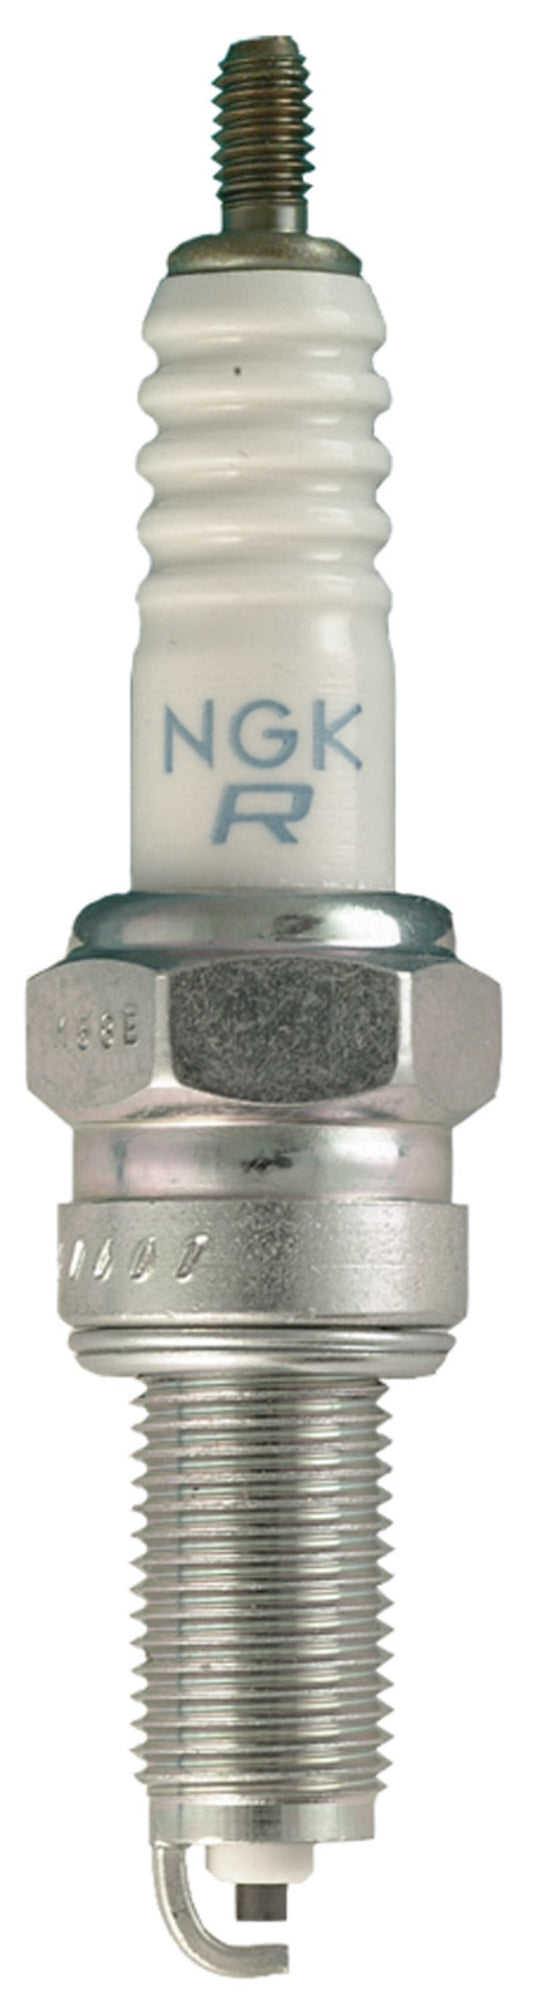 NGK Standard Spark Plug Box of 4 (CPR6EA-9S)